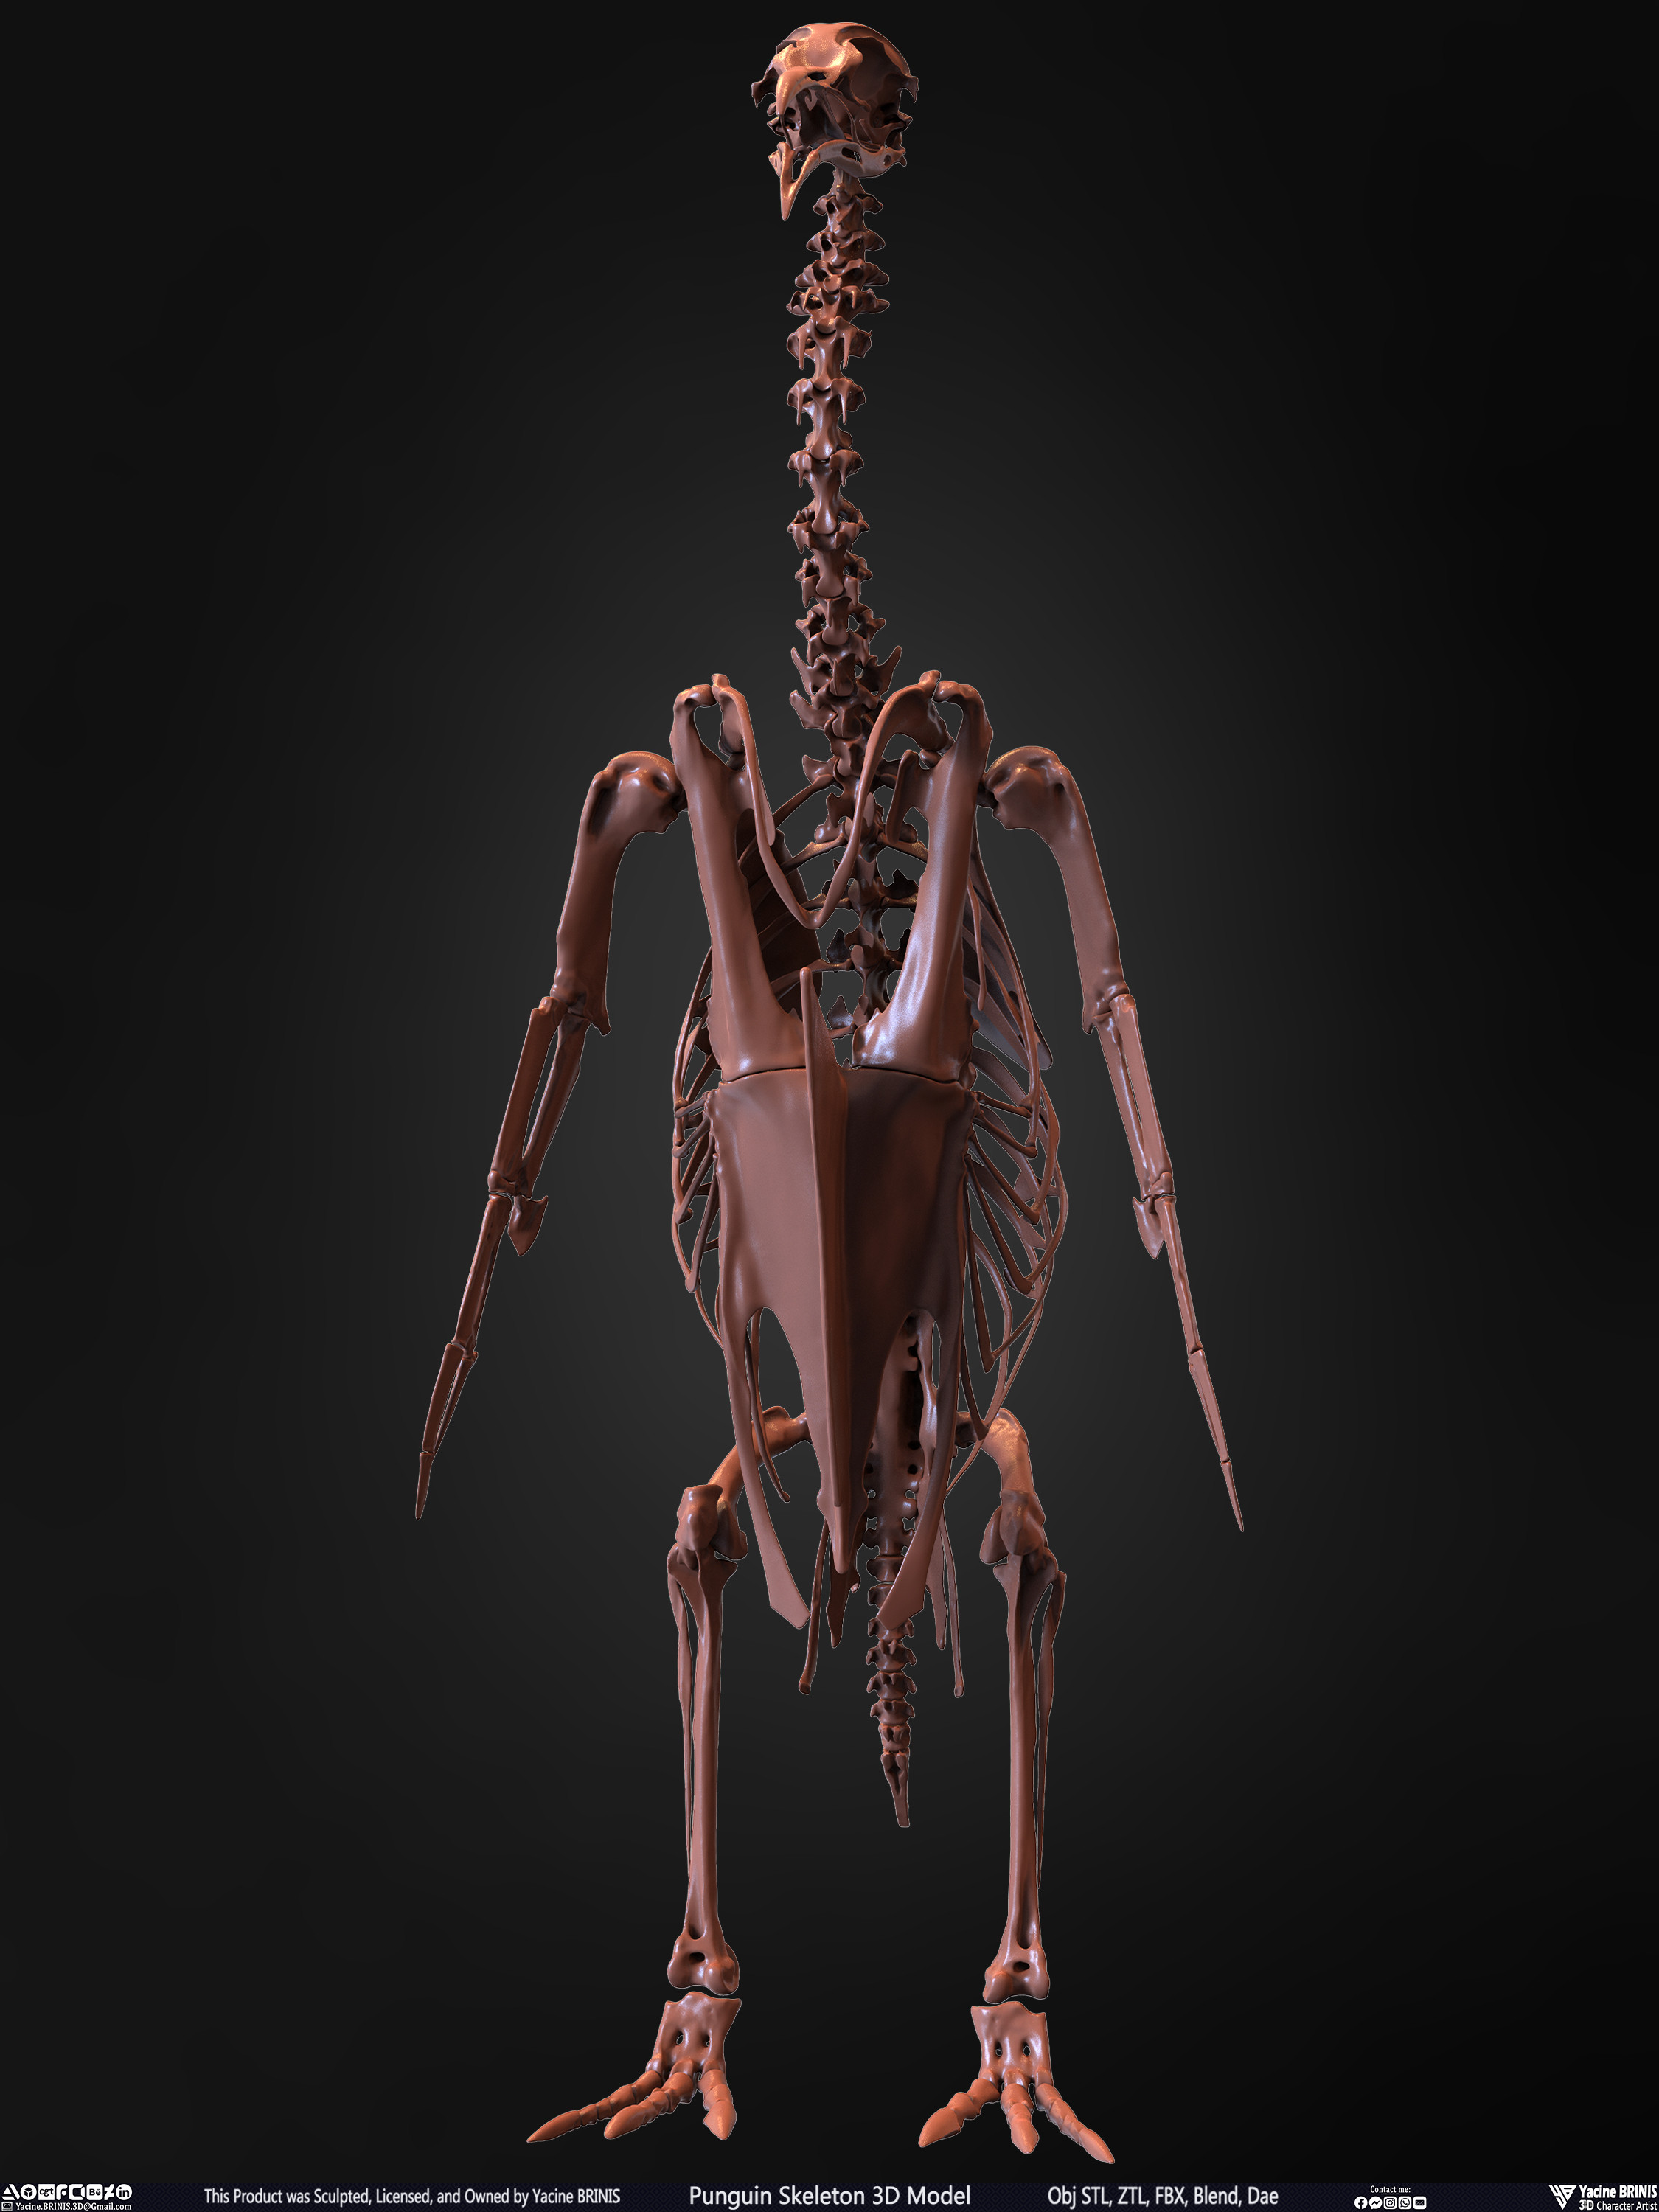 Penguin Skeleton 3D Model Sculpted by Yacine BRINIS Set 005